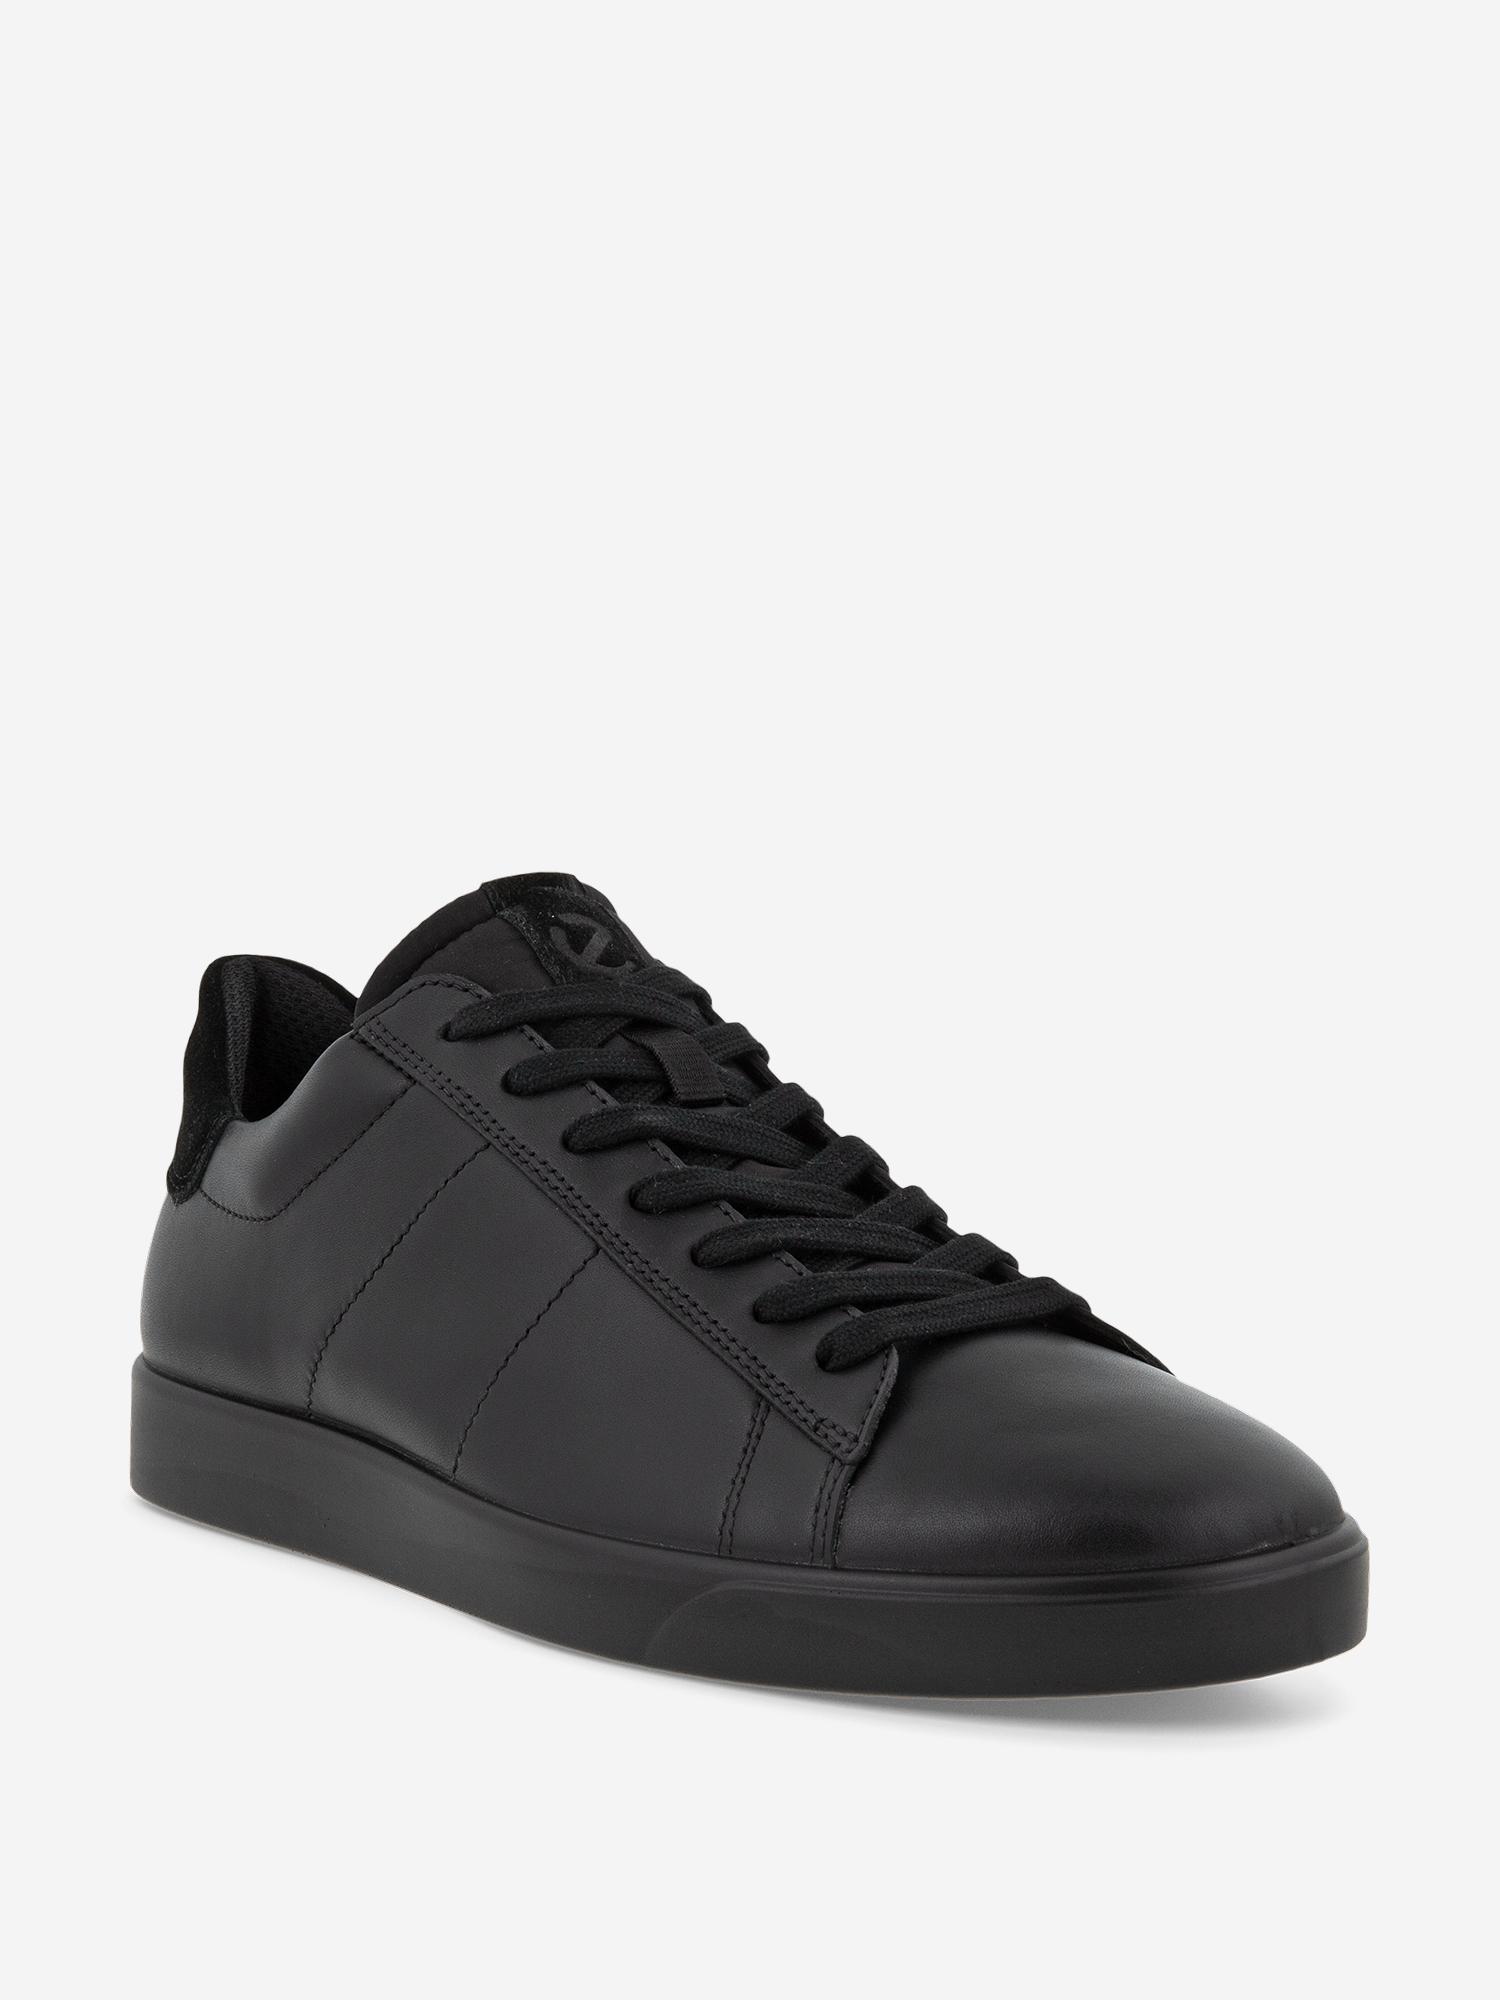 Полуботинки мужские Ecco Street Lite, Черный ботинки утепленные для мальчиков ecco street tray k